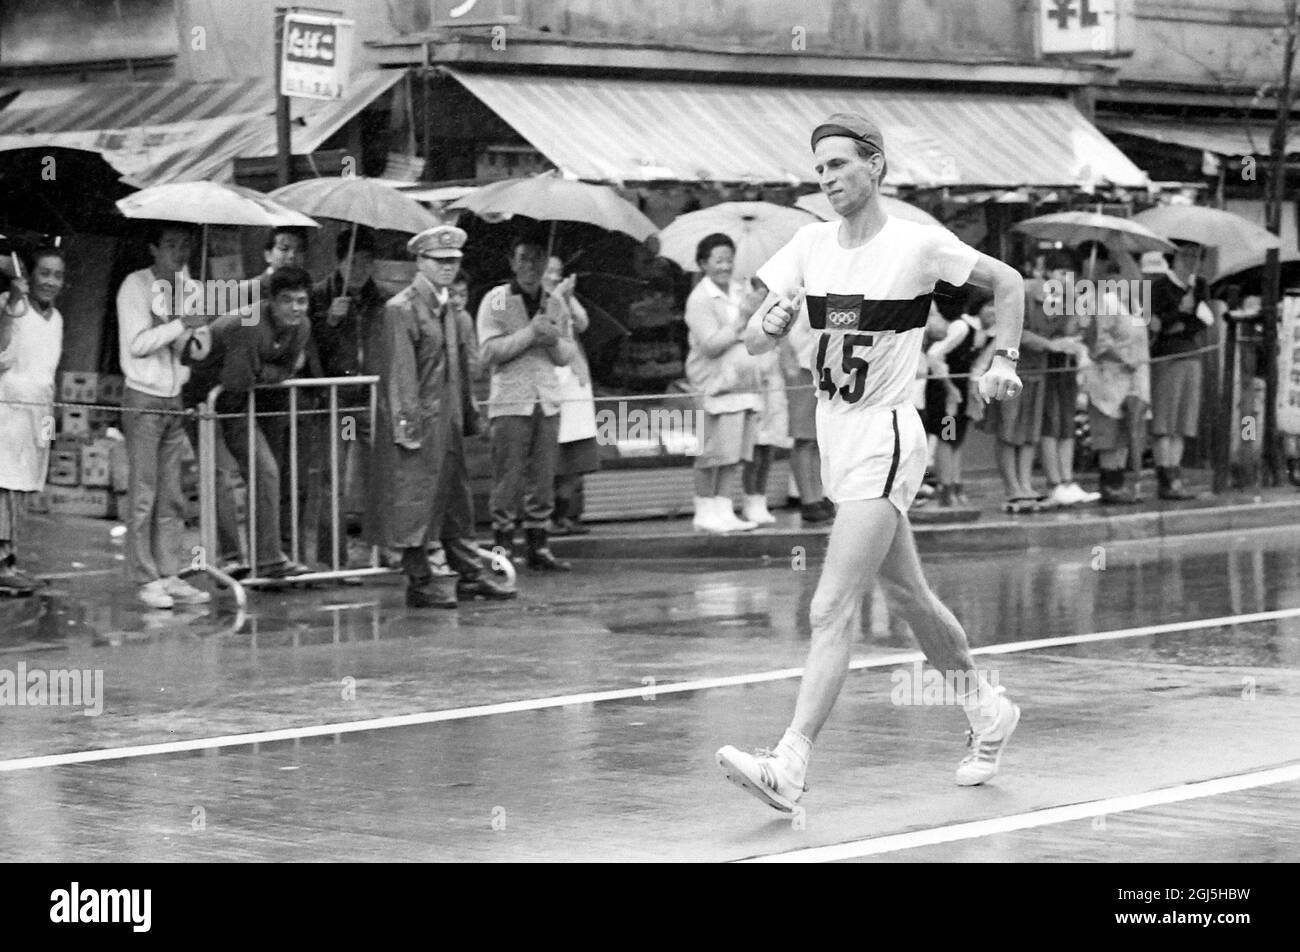 OLYMPISCHE SPIELE, OLYMPISCHE SPORTSPIELE - DIE XVIII 18. OLYMPIADE IN TOKYO, JAPAN - WALKING OLYMPICS 50KM SAKOWSKI WÄHREND DES SPAZIERGANGS BEENDETE ER DEN 8. ; 20. OKTOBER 1964 Stockfoto